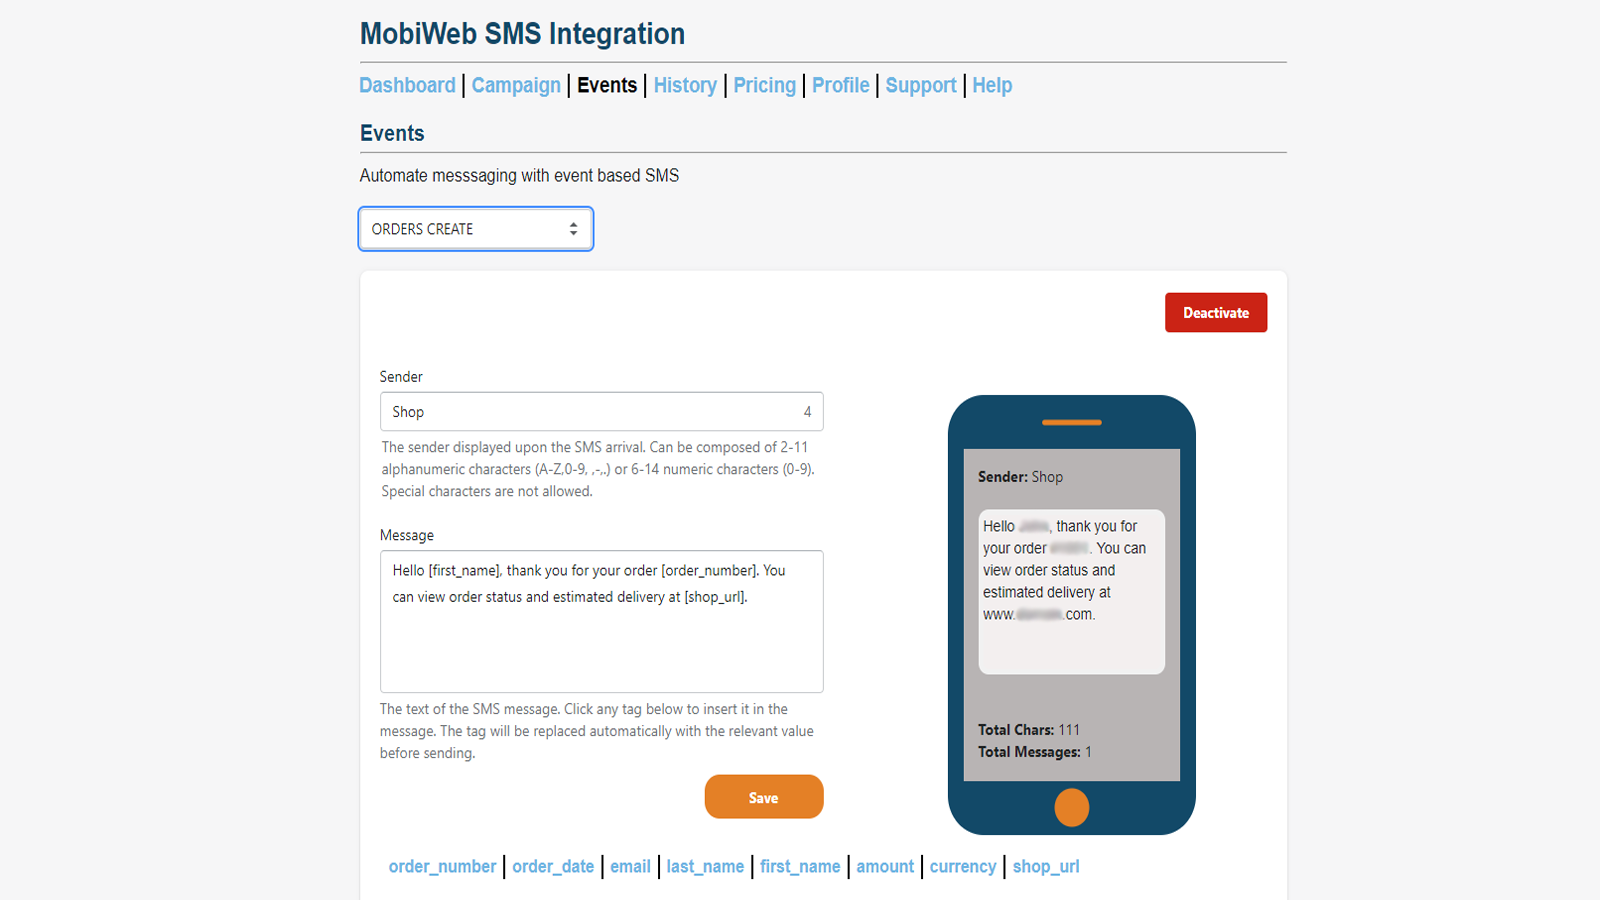 Imagen de los eventos de la tienda de la aplicación MobiWeb SMS